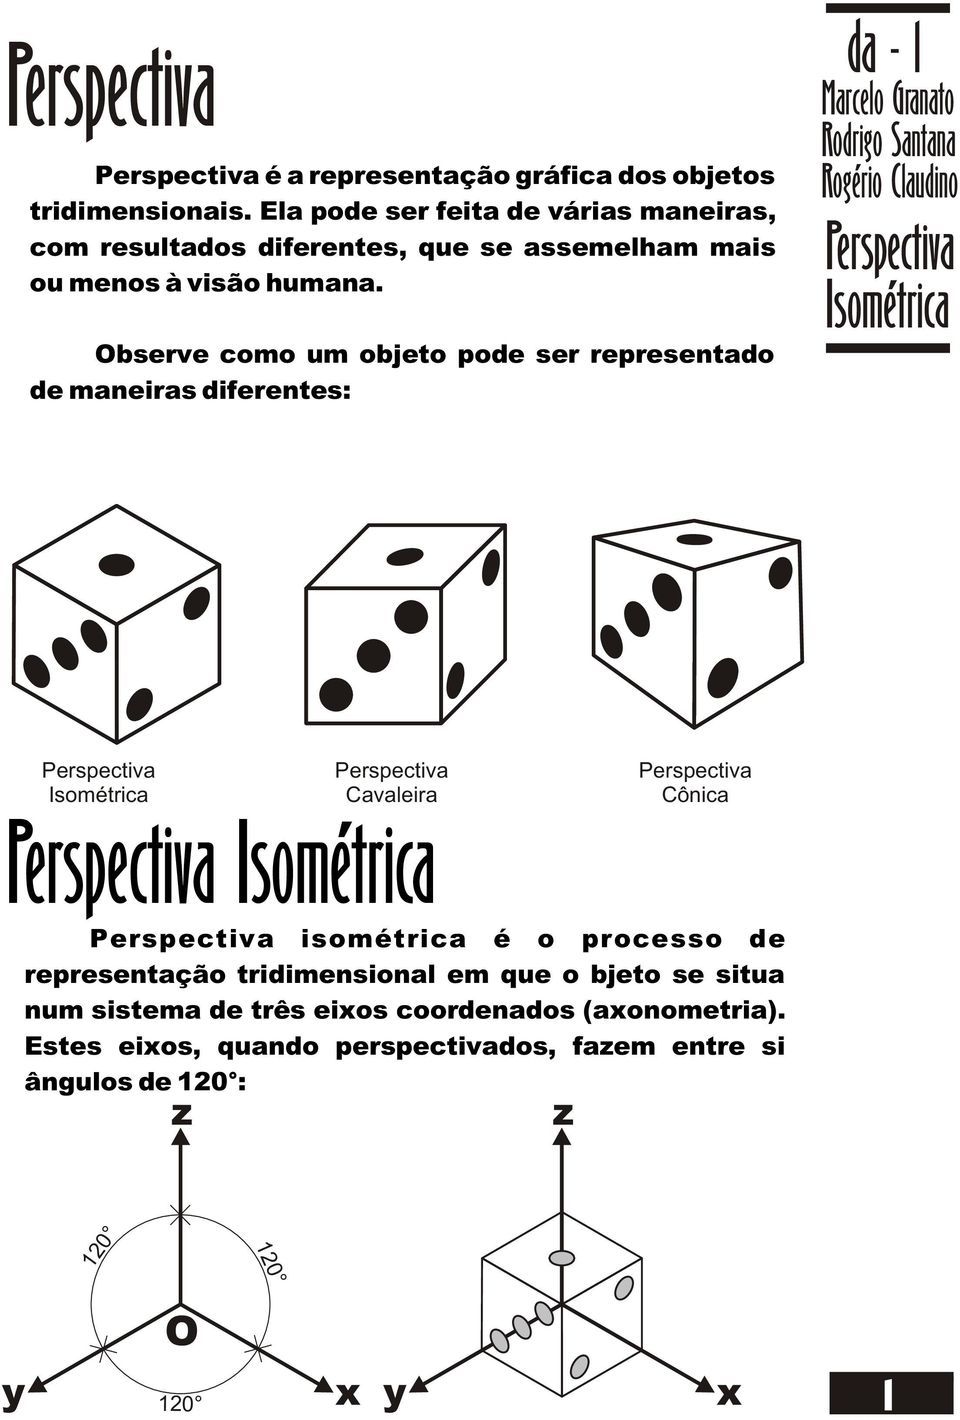 Observe como um objeto pode ser representado de maneiras diferentes: da - 1 Marcelo Granato Cavaleira Cônica isométrica é o